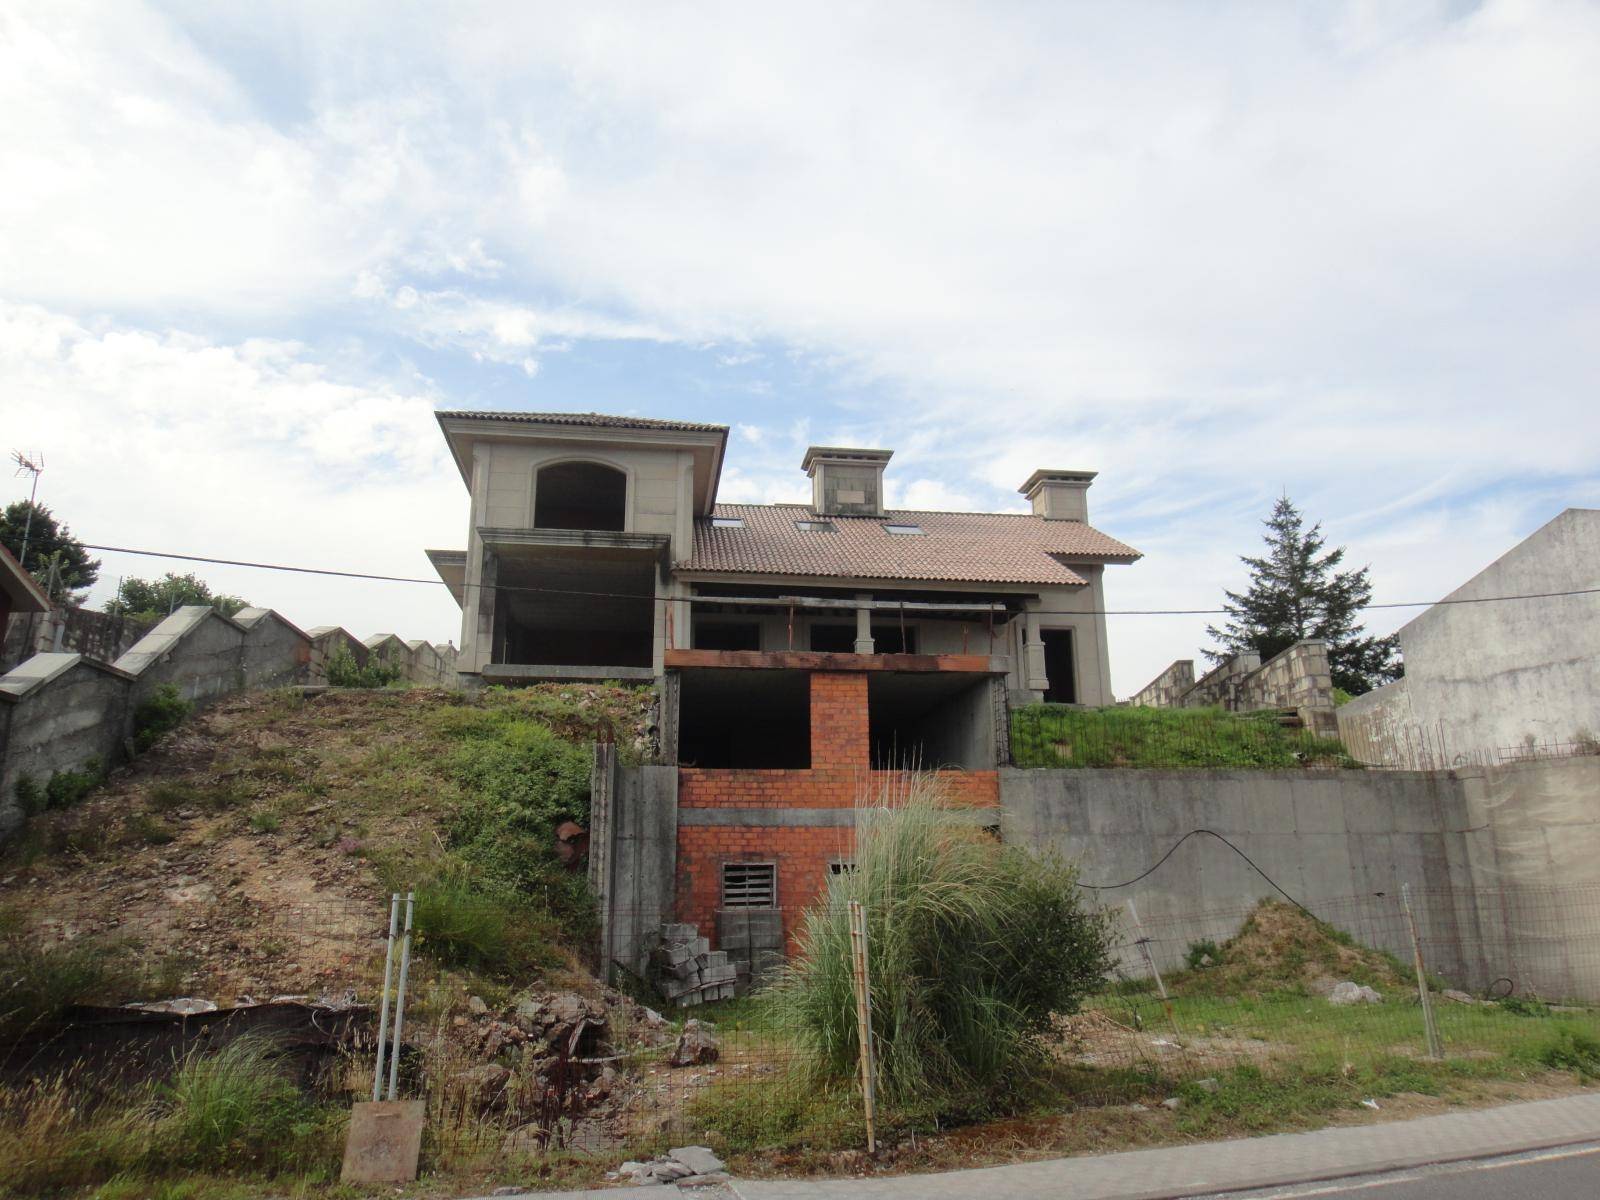 House for sale in A Pobra do Caramiñal